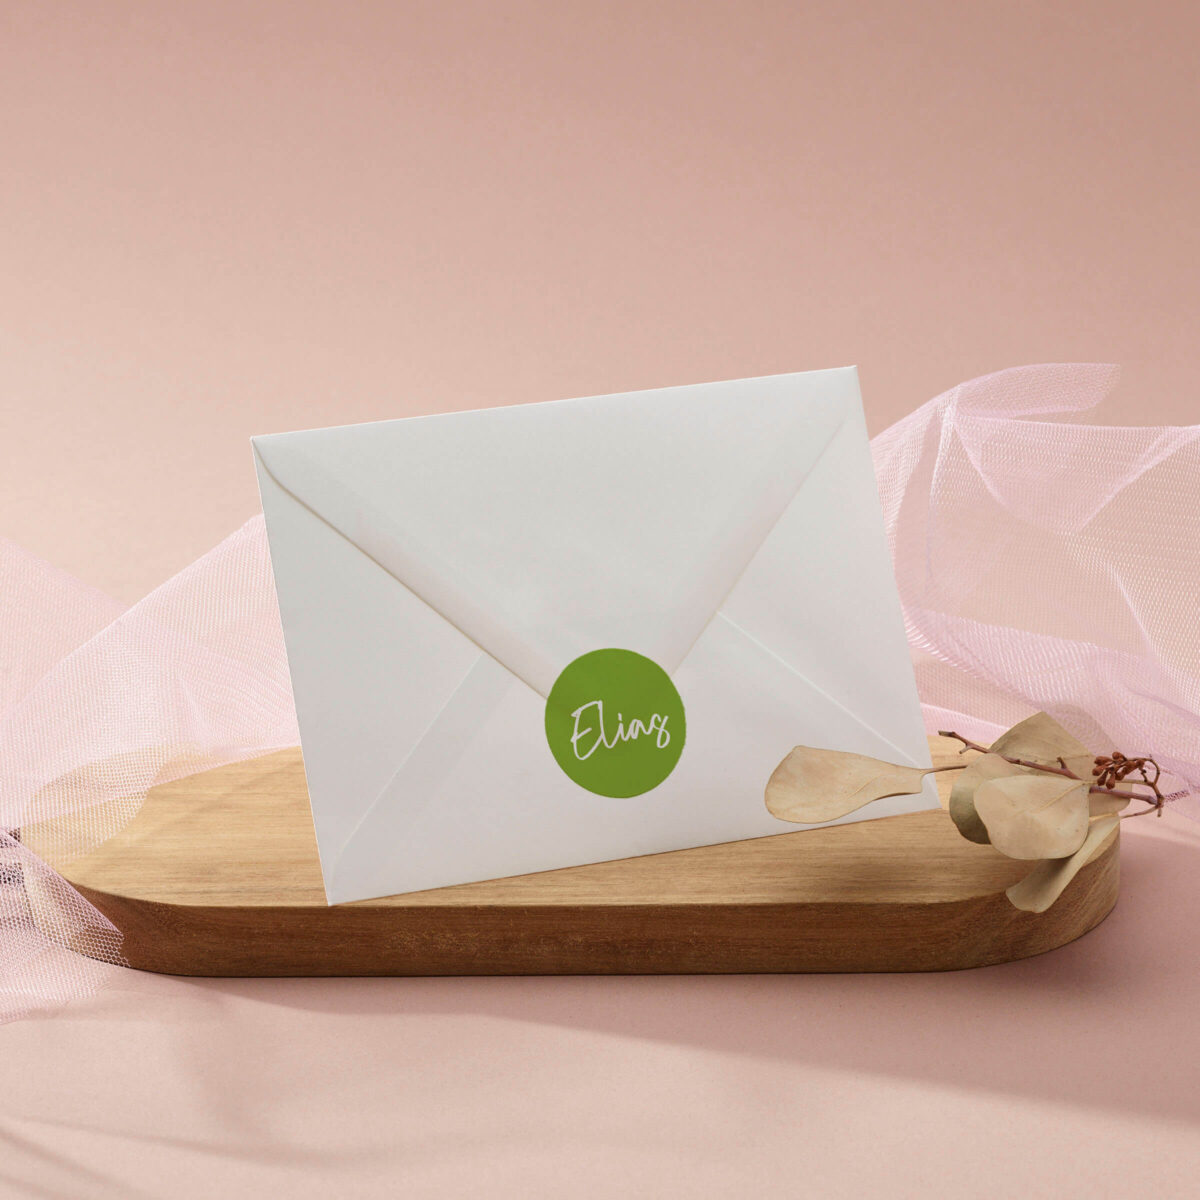 ronde sticker dino fun met felgroene achtergrond en naam in wit op envelop